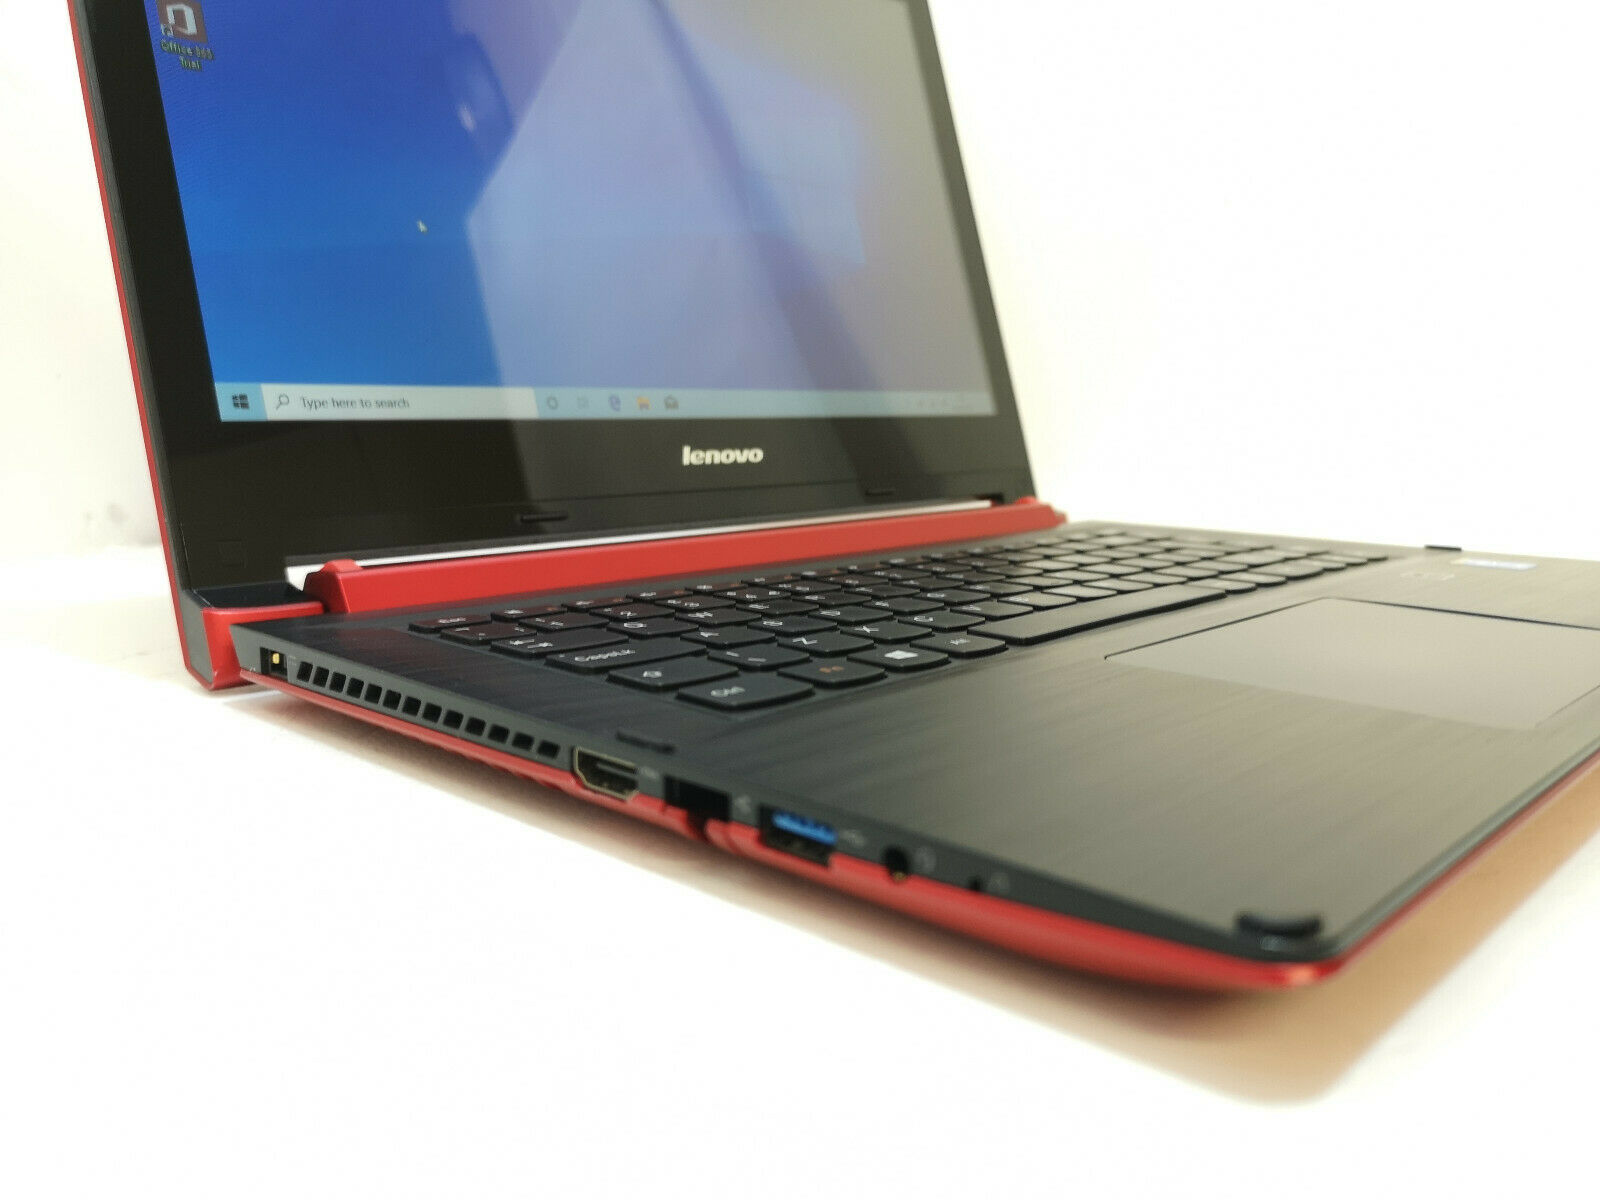 Refurbished Lenovo 20404 Red Laptop PC